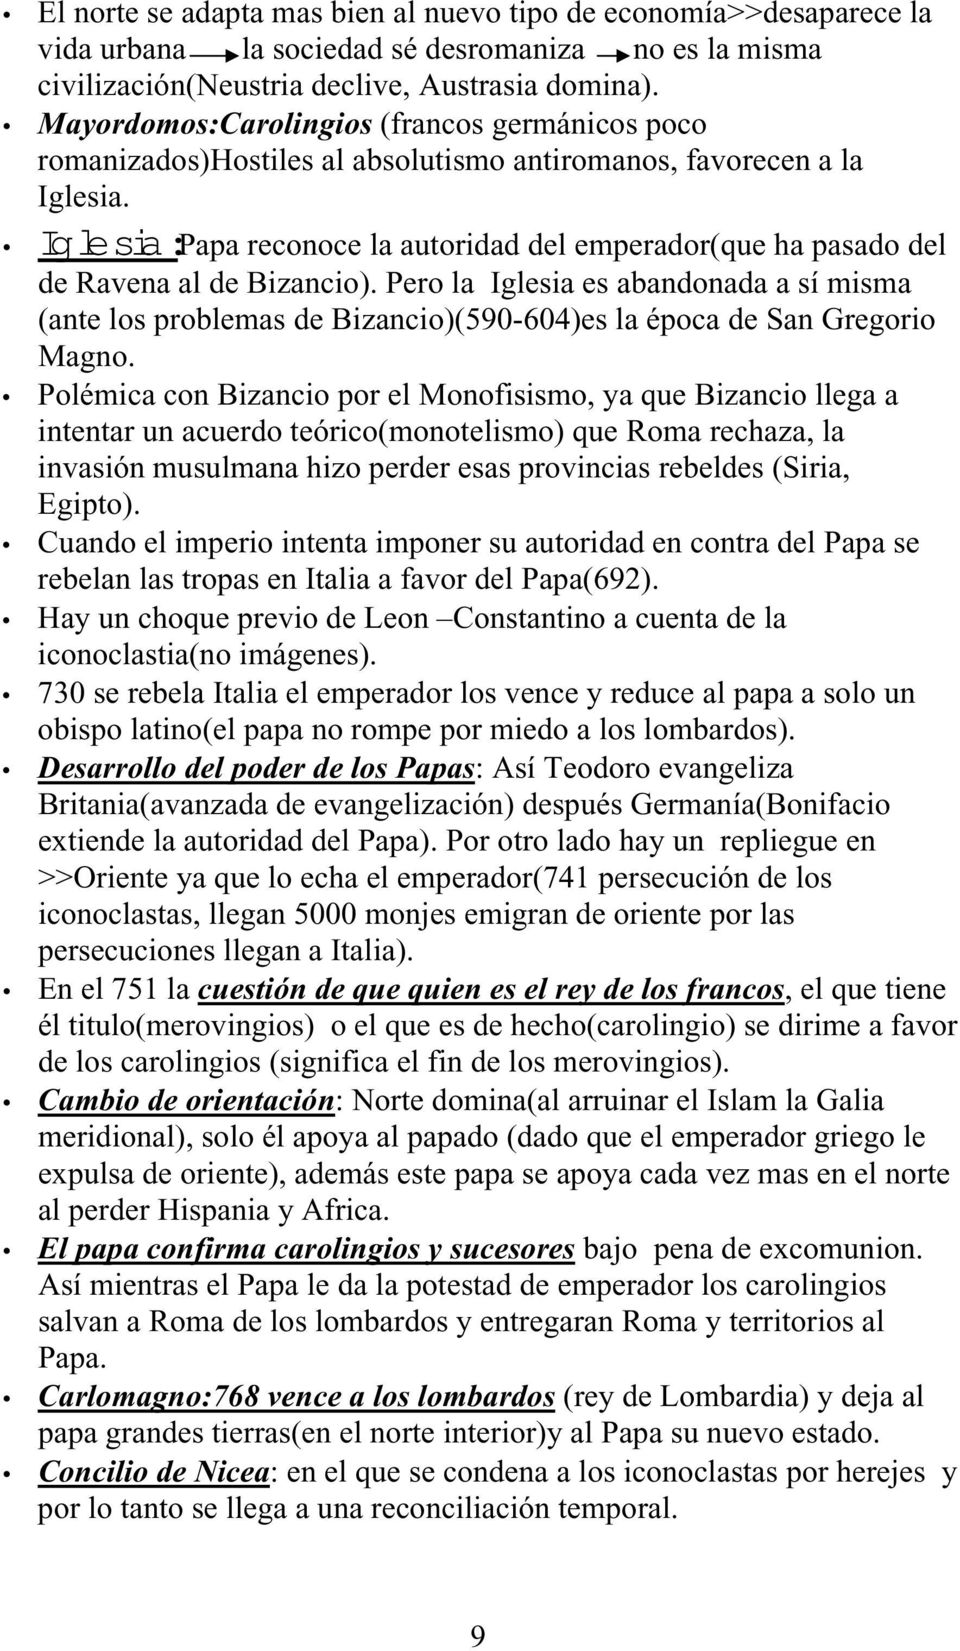 Iglesia:Papa reconoce la autoridad del emperador(que ha pasado del de Ravena al de Bizancio).